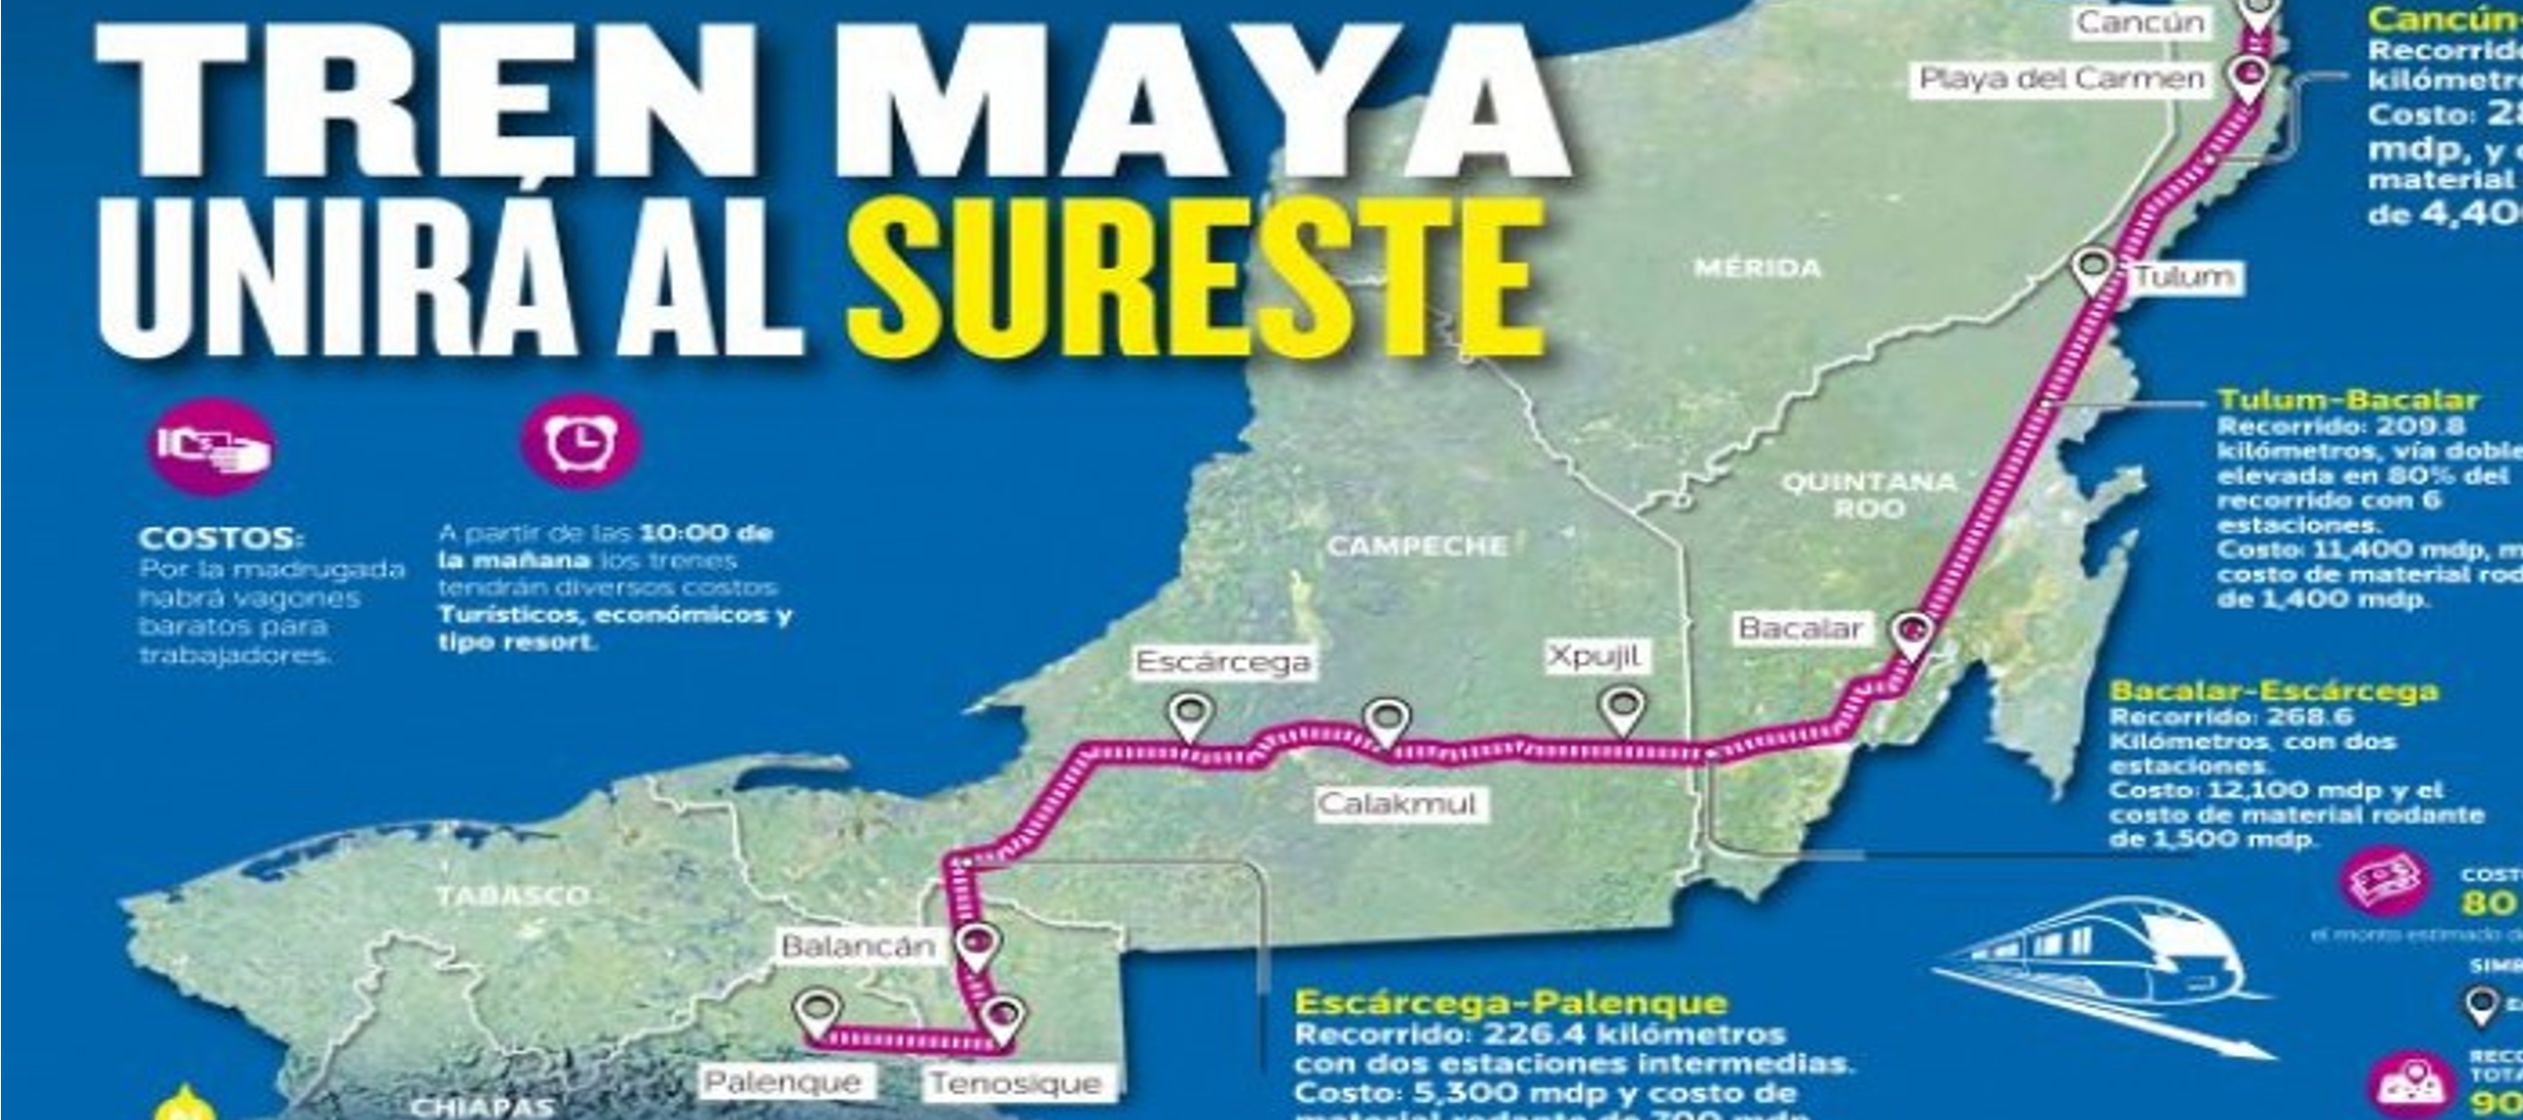 Entre otros puntos, el tren pasará por Calakmul, Tulum, Bacalar, Mérida y Valladolid,...